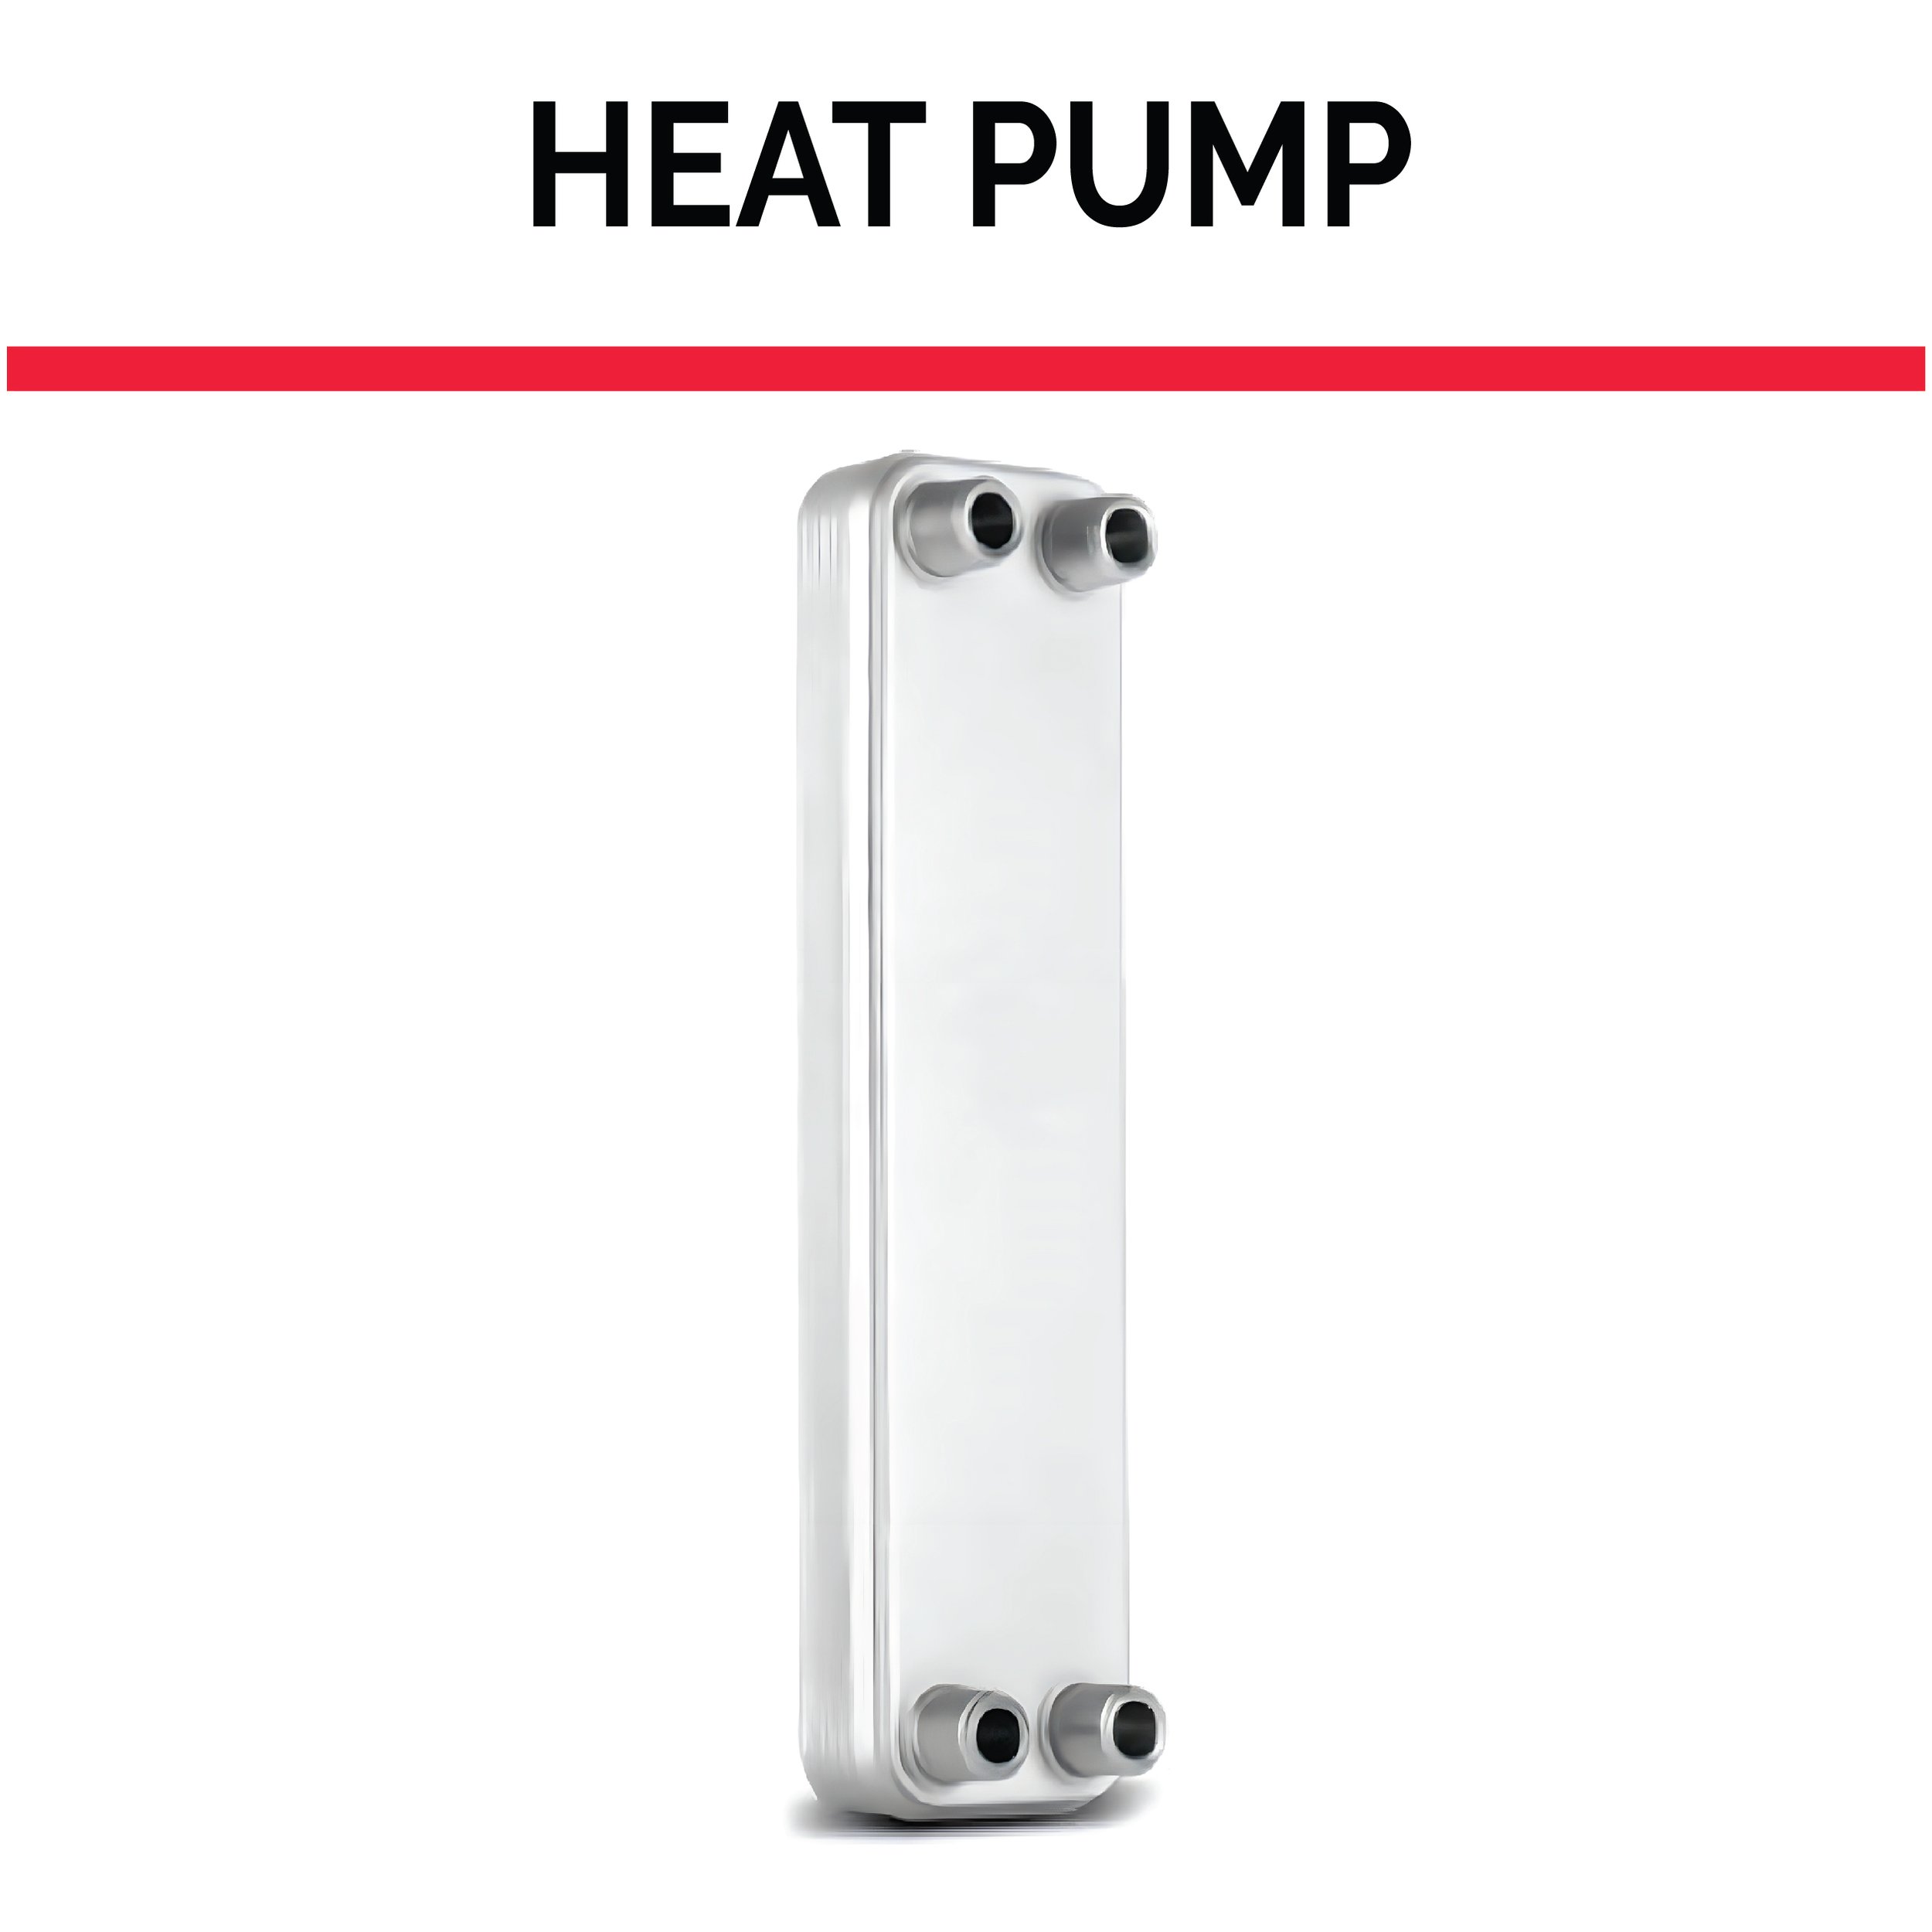 Heat Pump.jpg